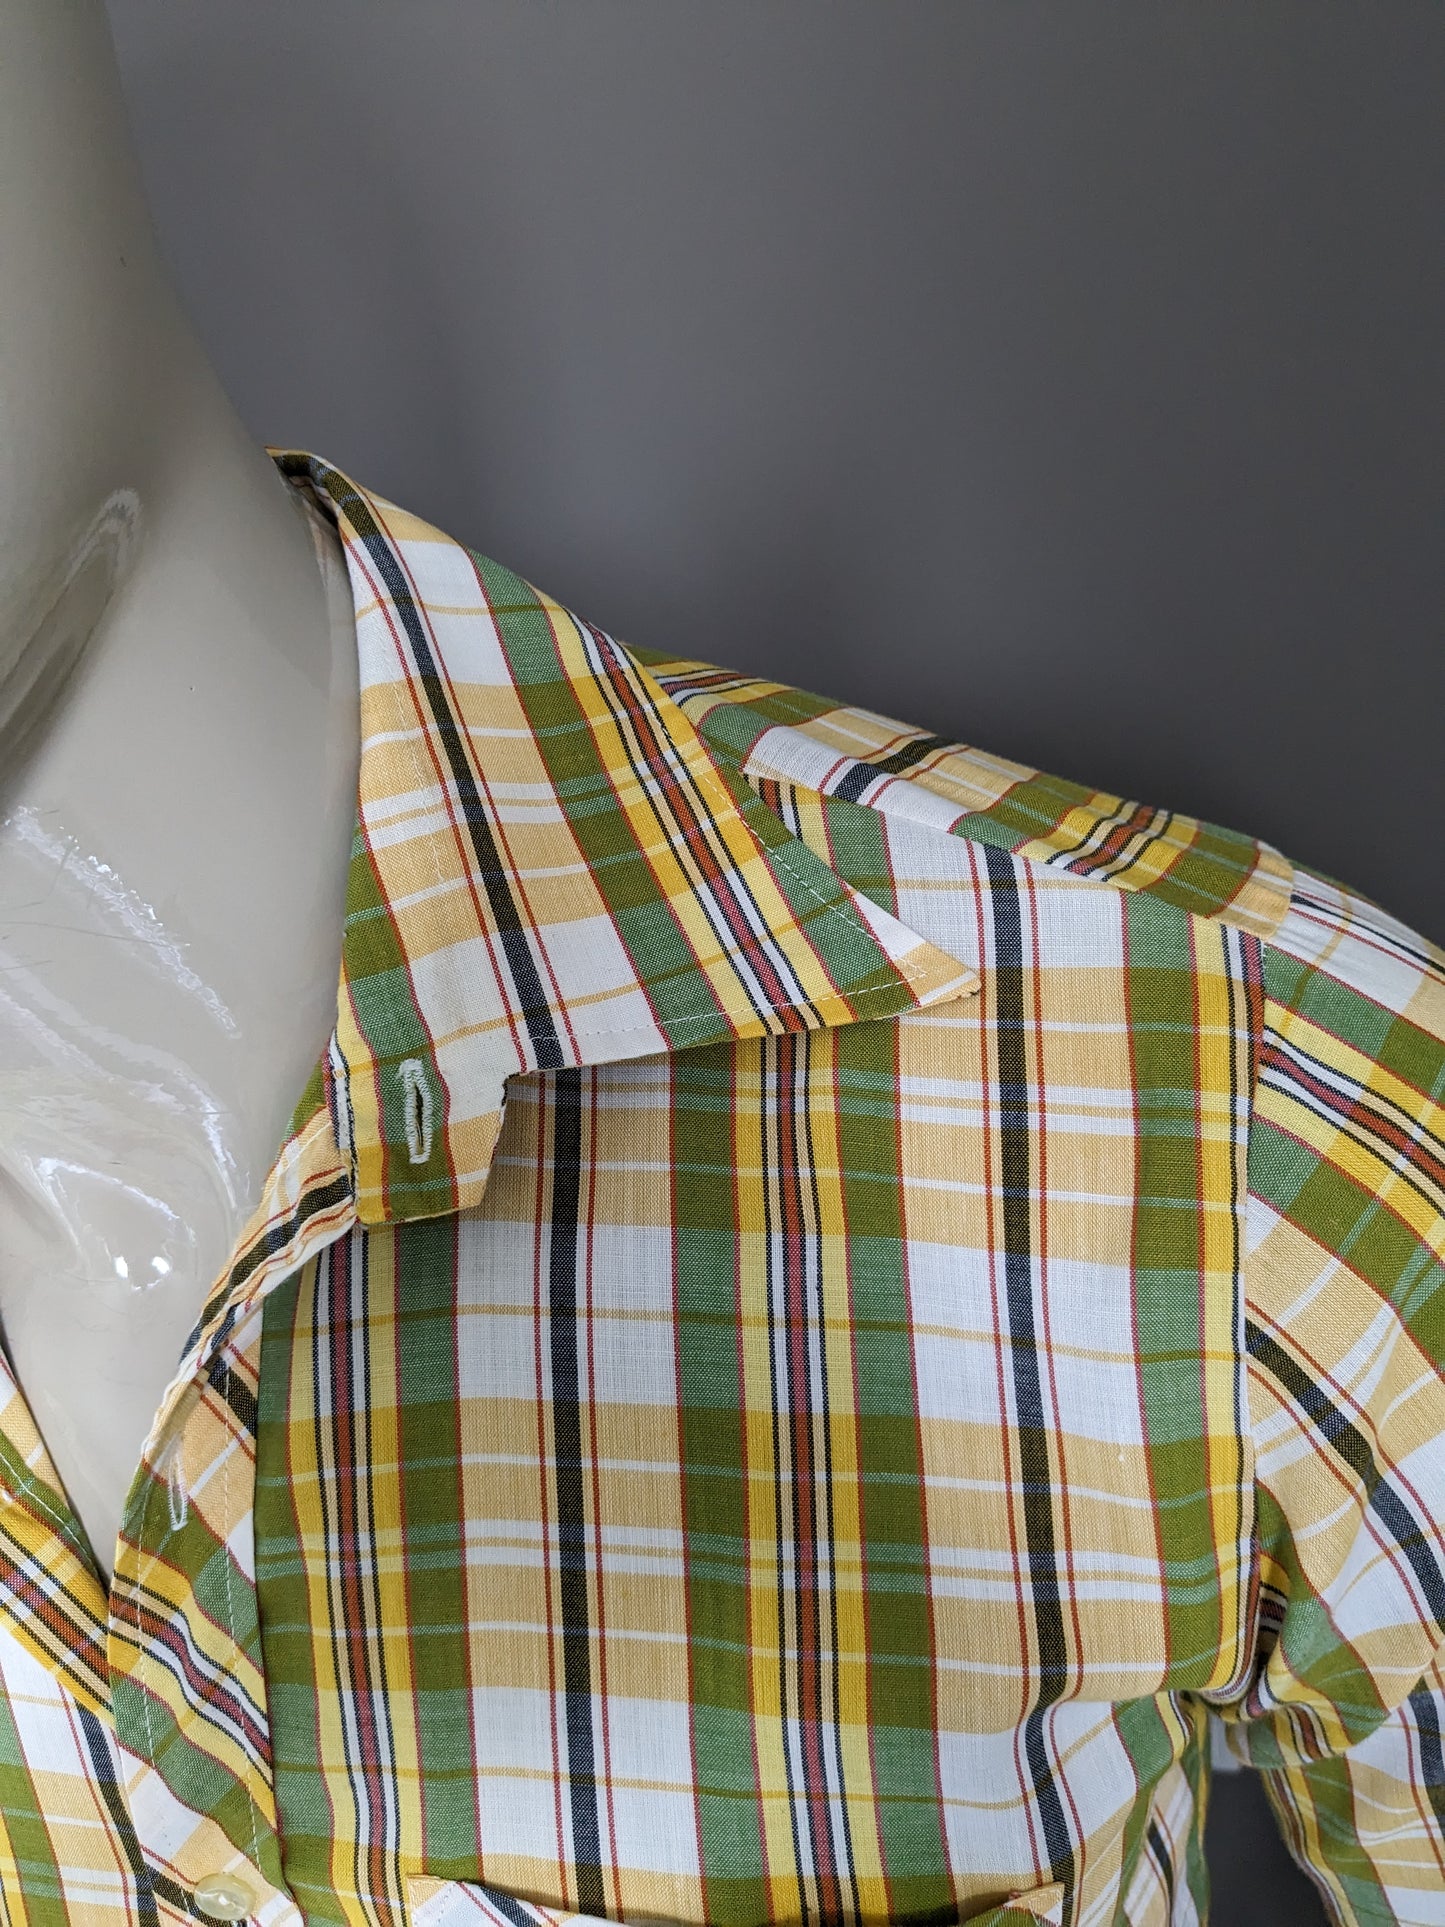 Chemise de fekon vintage avec collier. Velée verte jaune vérifiée. Taille M.